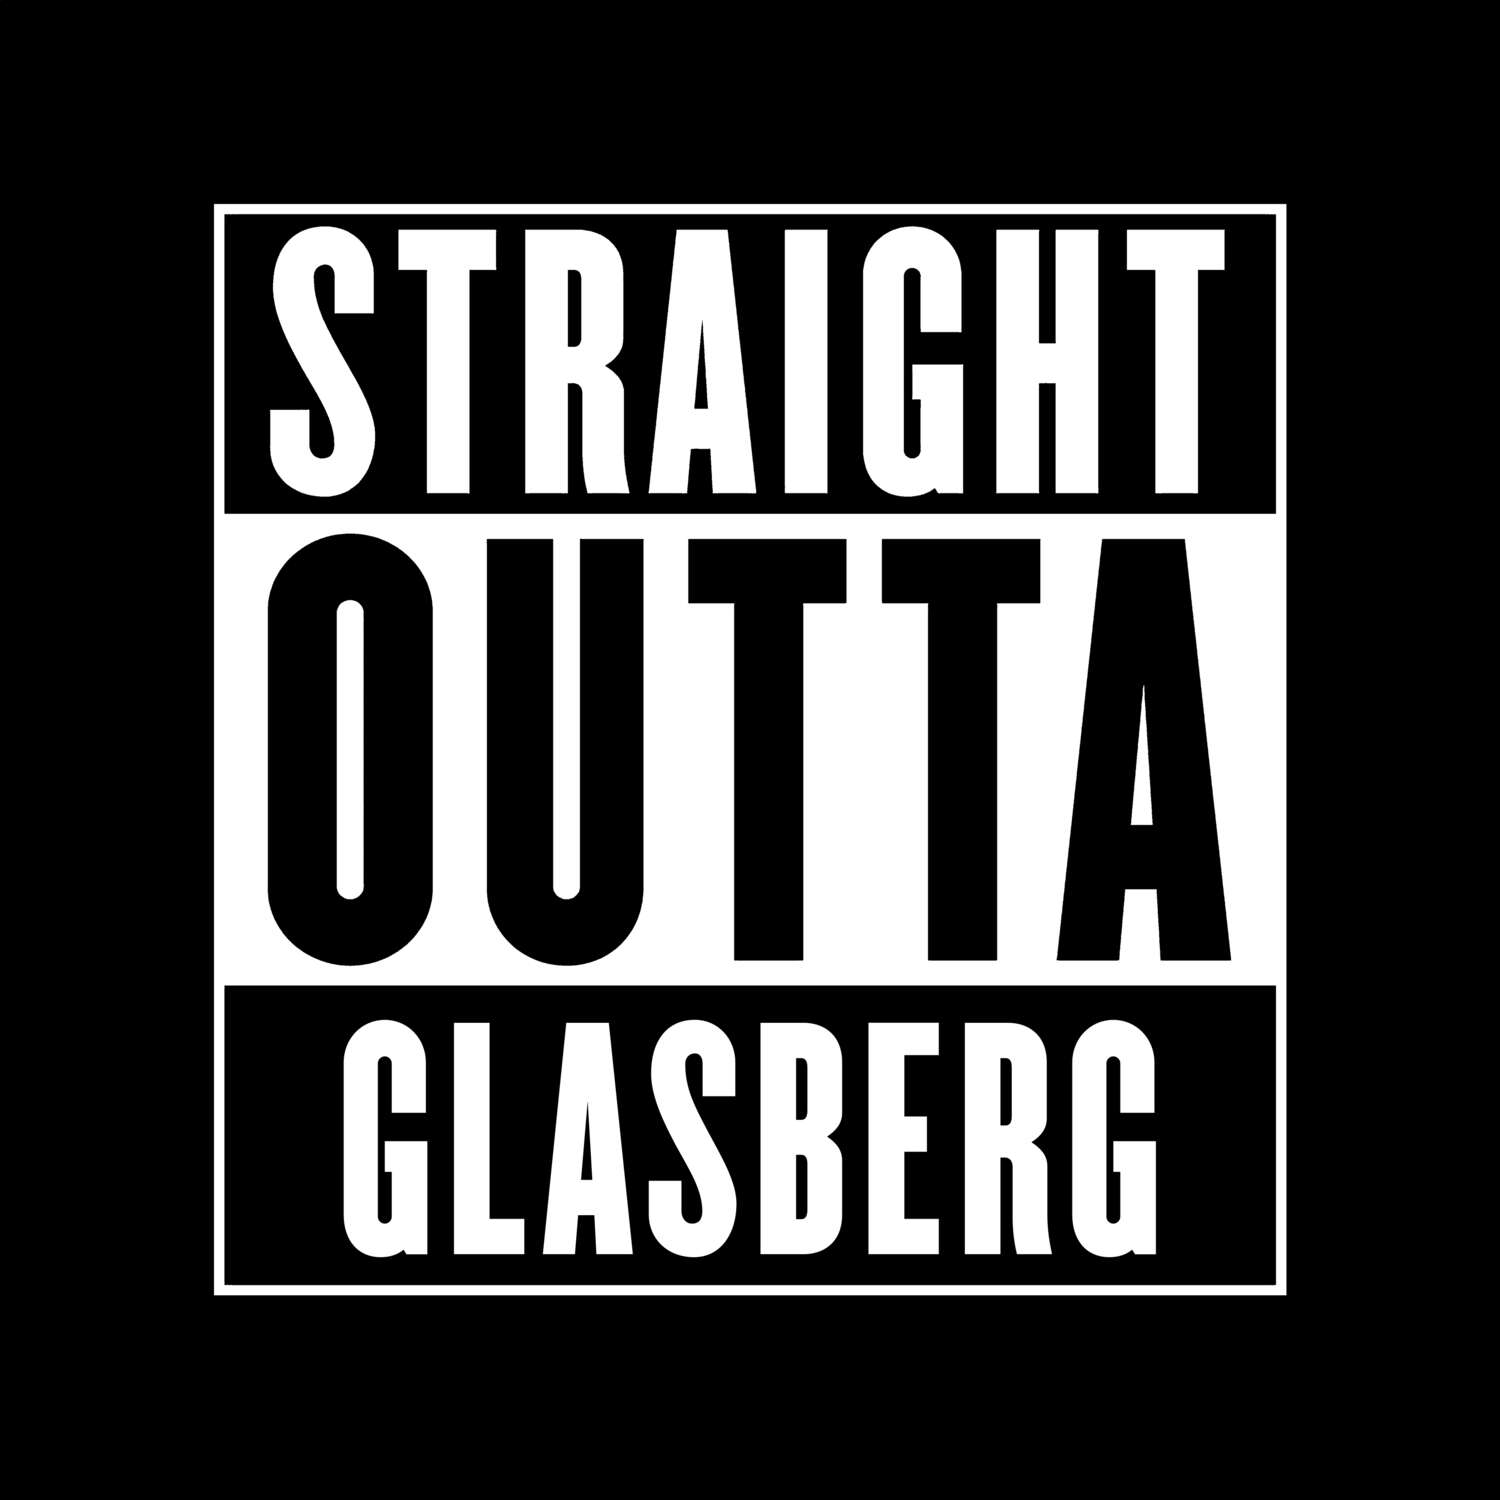 Glasberg T-Shirt »Straight Outta«